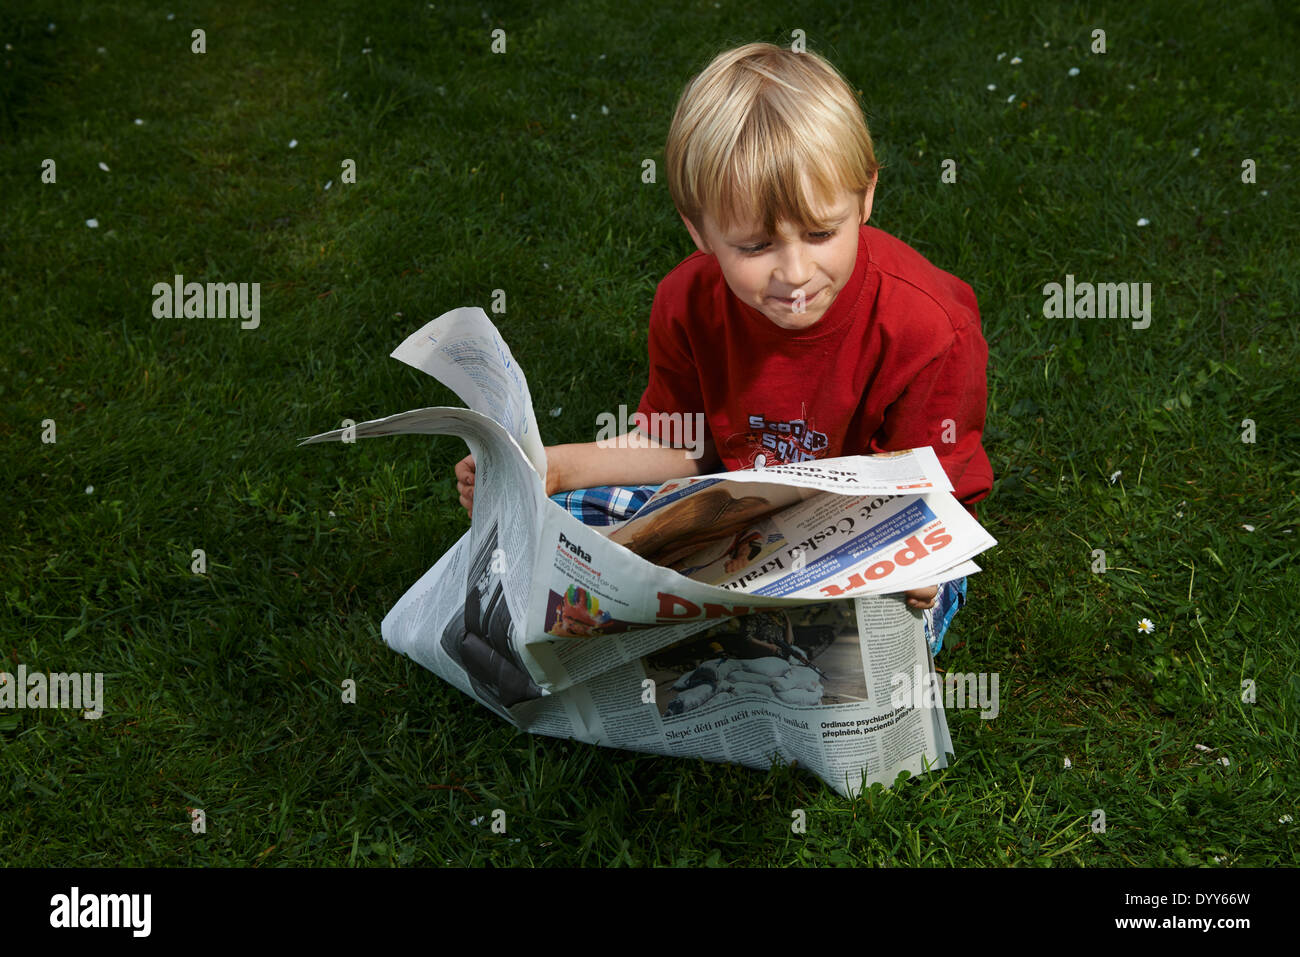 Ein Kind blonde junge liest Zeitung außerhalb am grünen Rasen Stockfoto